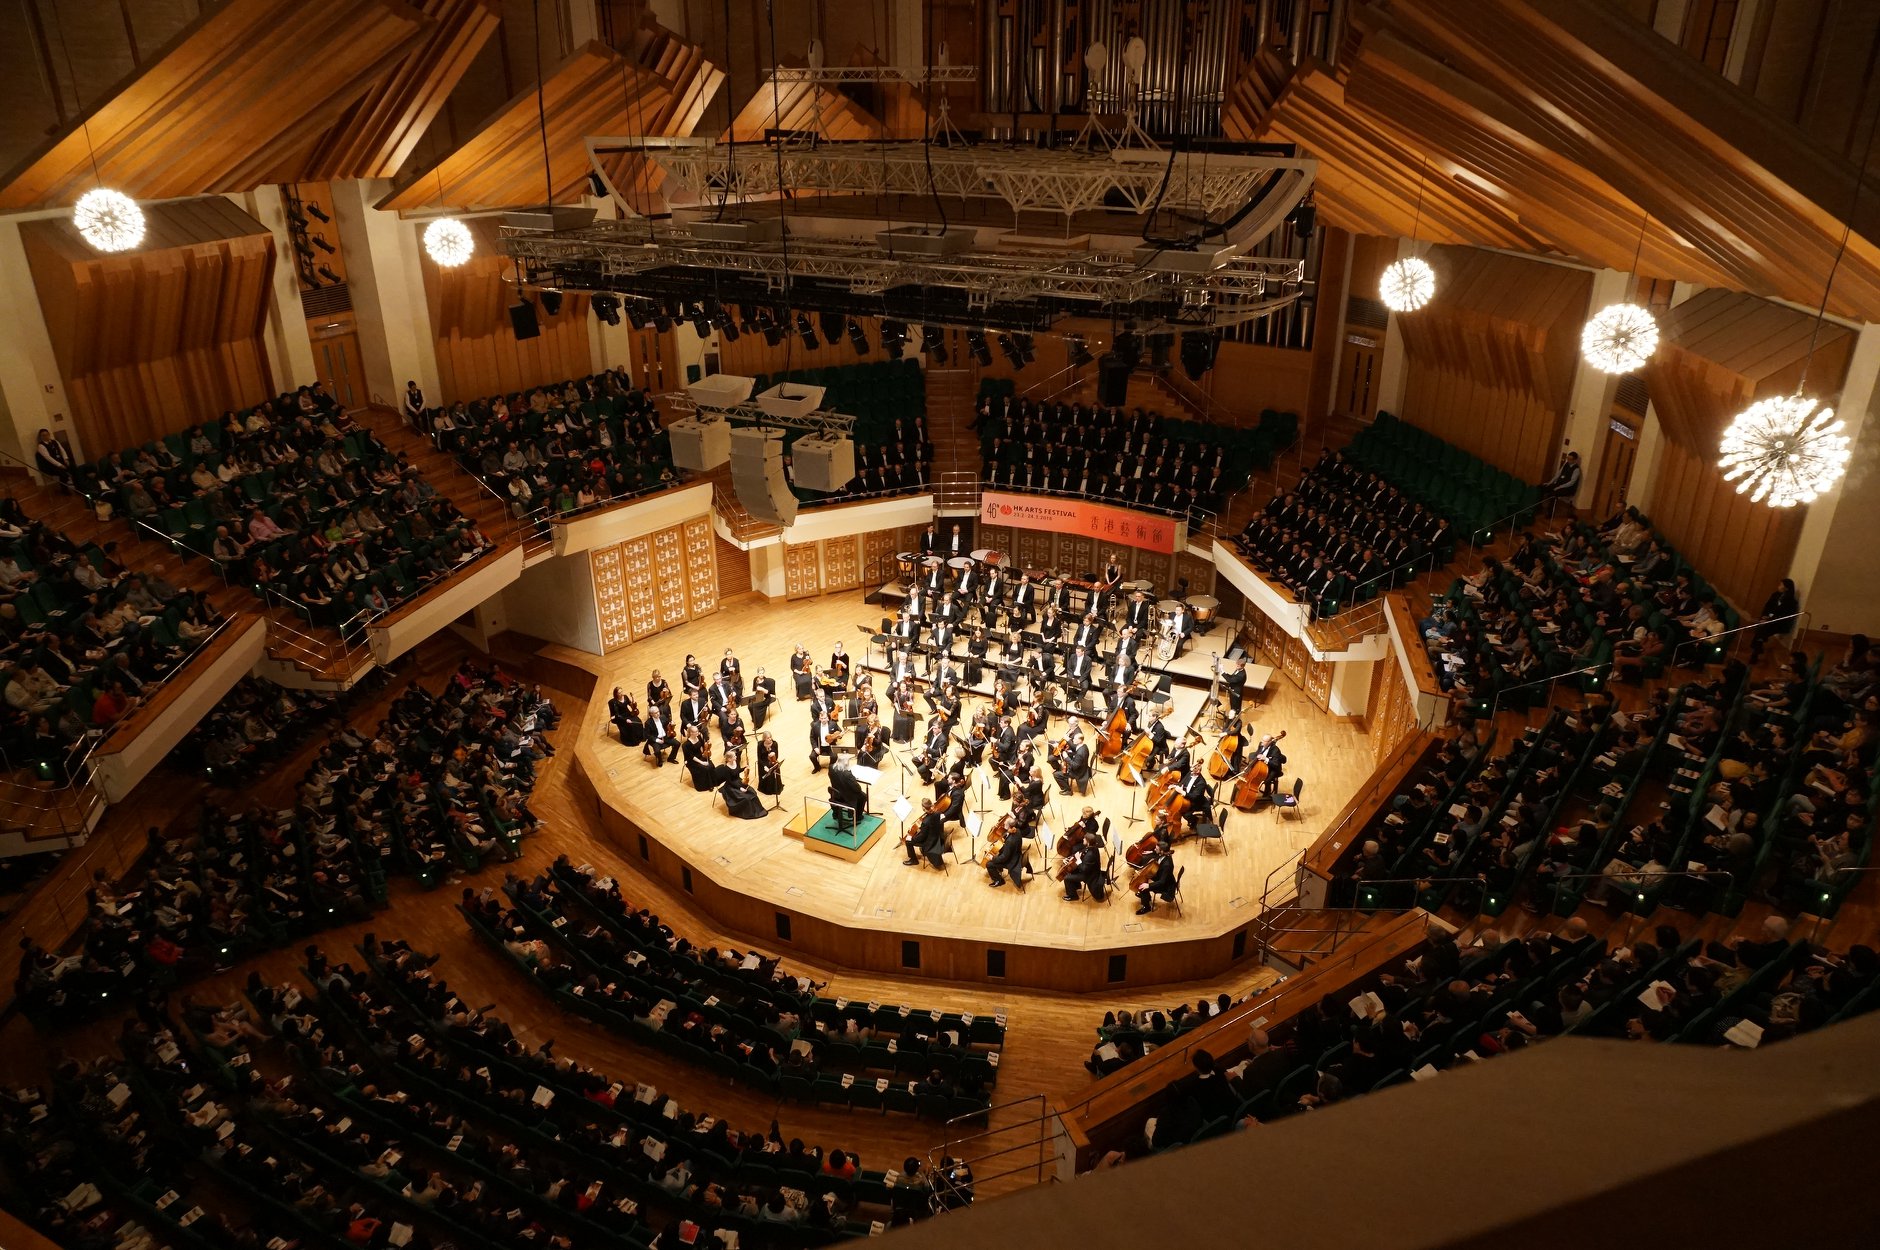 Das Estnische Nationale Sinfonieorchester tourte durch Frankreich und Deutschland